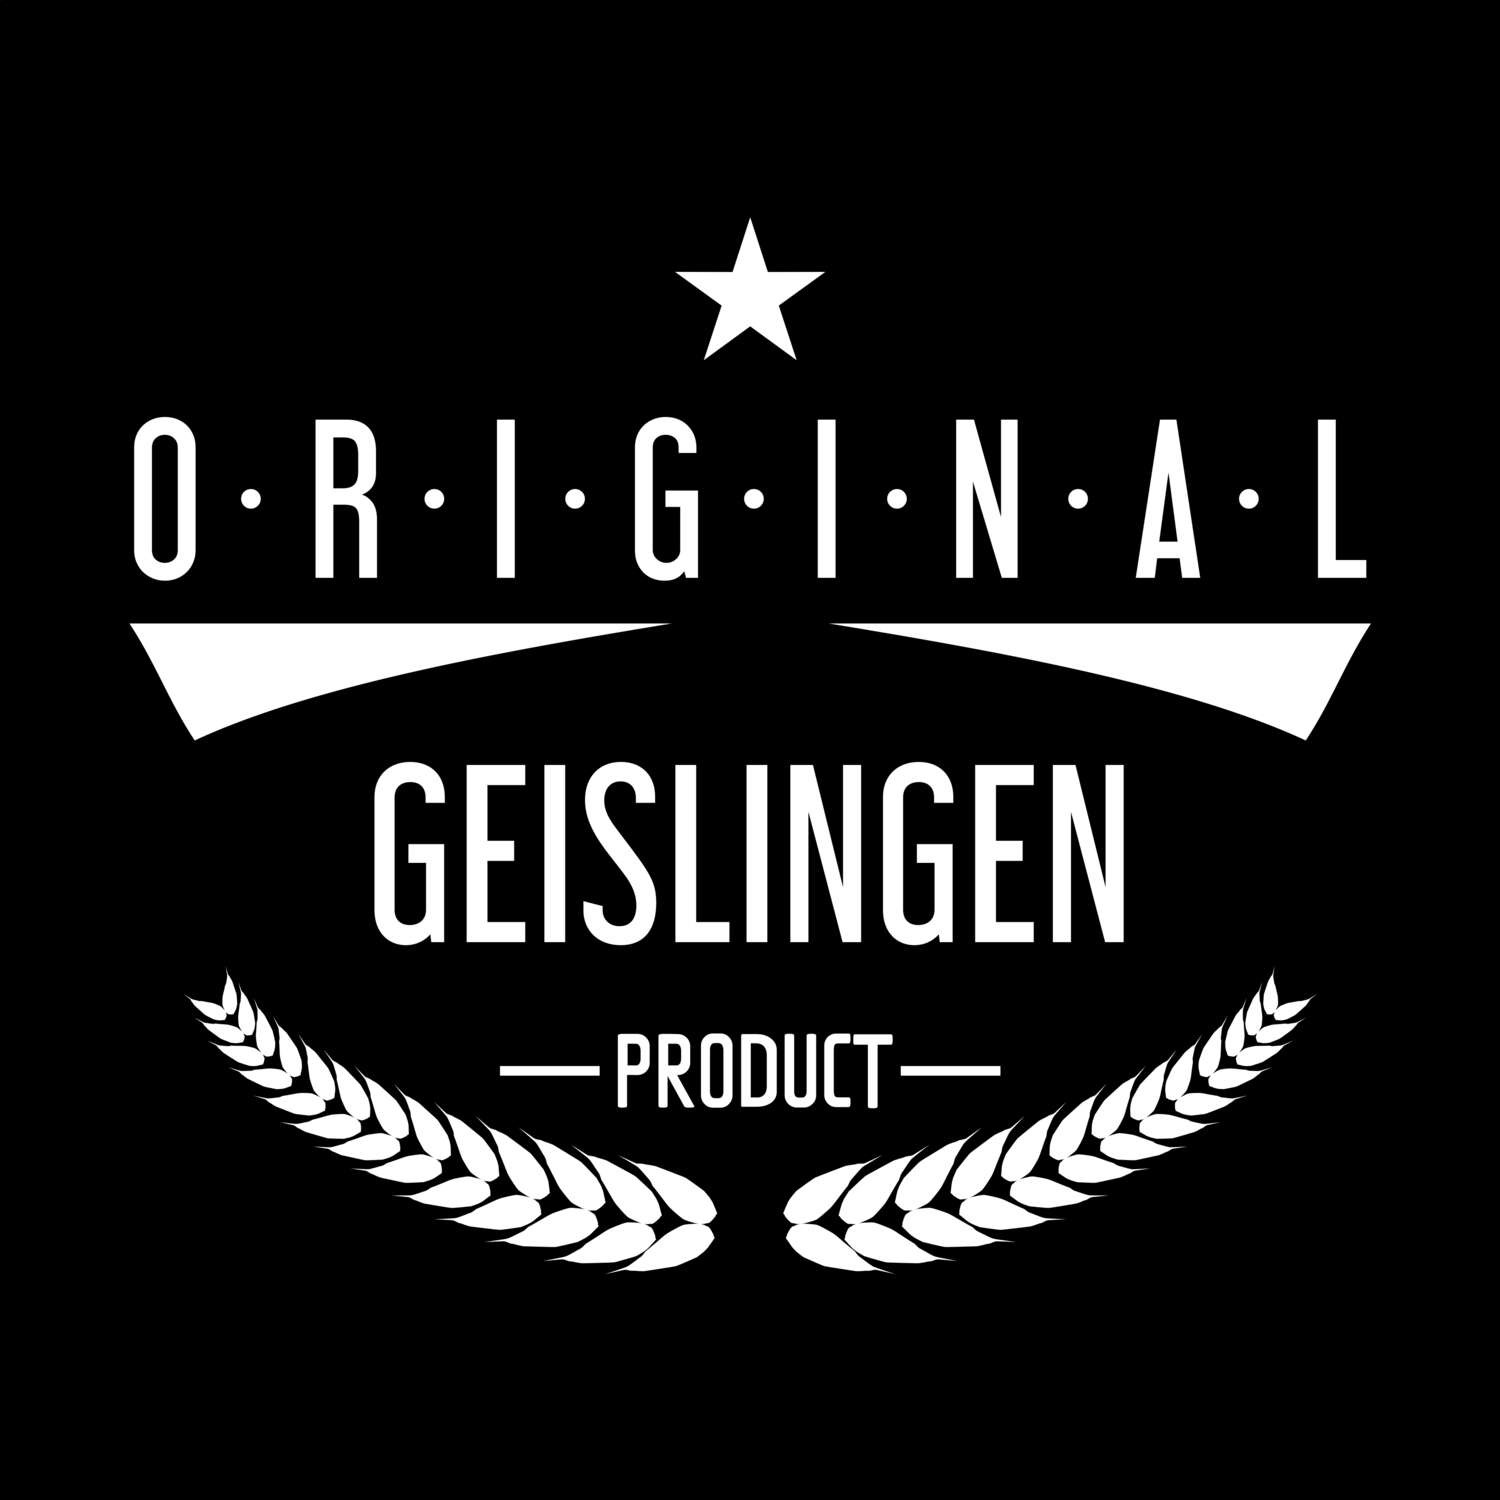 Geislingen T-Shirt »Original Product«